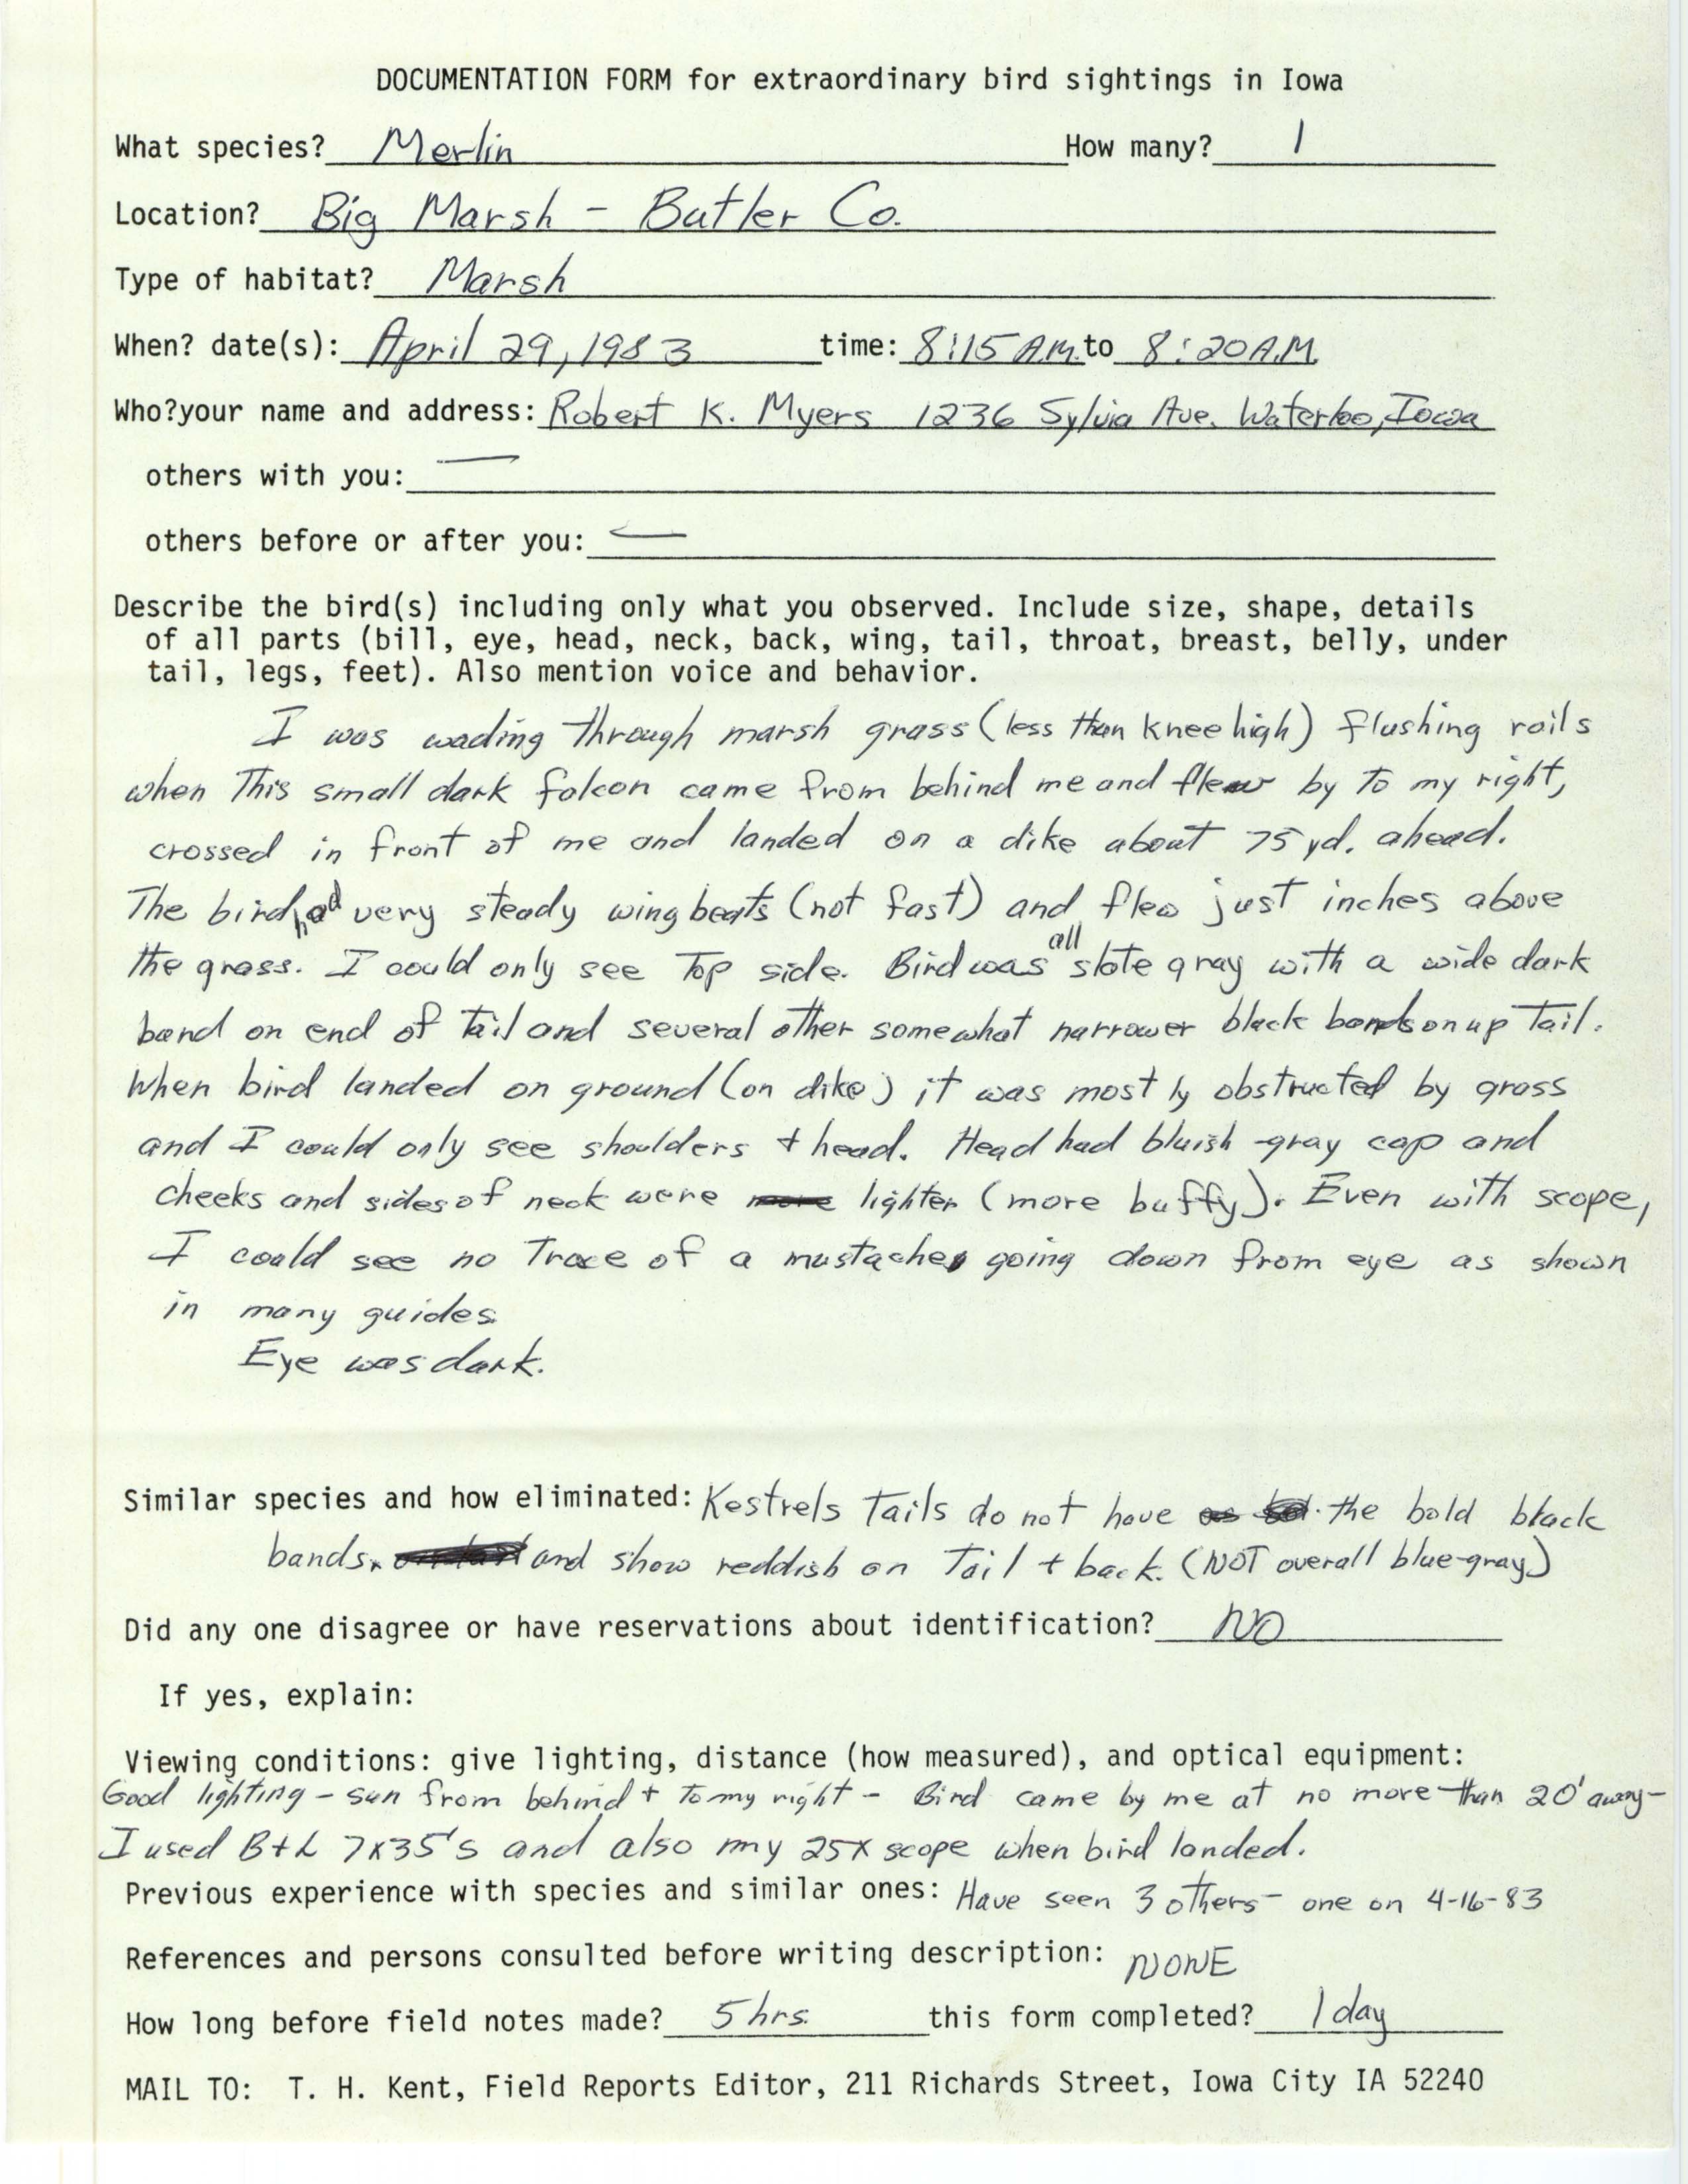 Rare bird documentation form for Merlin at Big Marsh, 1983